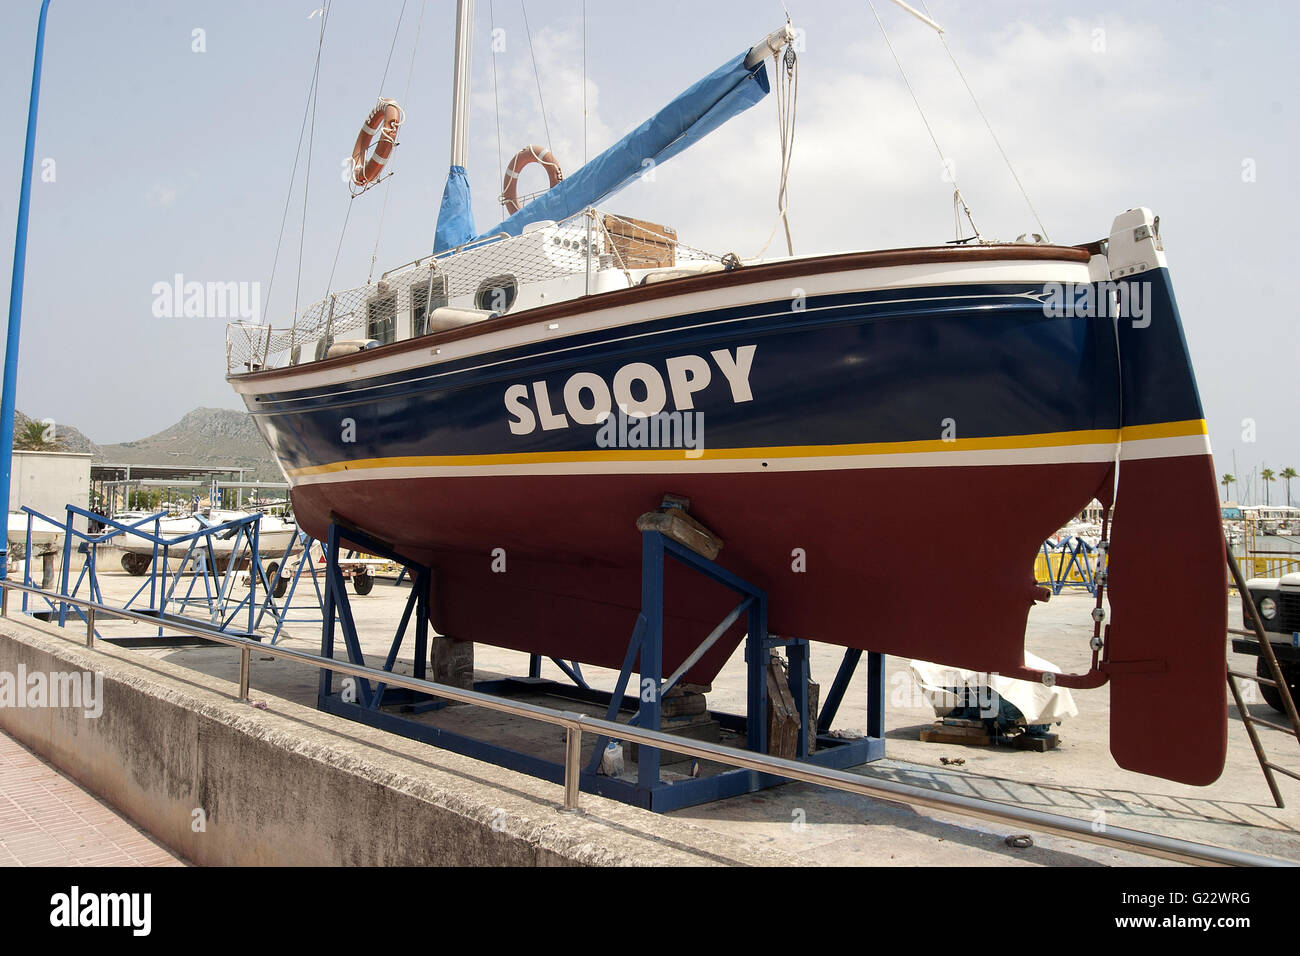 ein schönes Bild von einem blauen und roten Boot auf das Dock für die Wartung in Palma De Mallorca, Spanien, am Meer, Tourismus, Urlaub Stockfoto